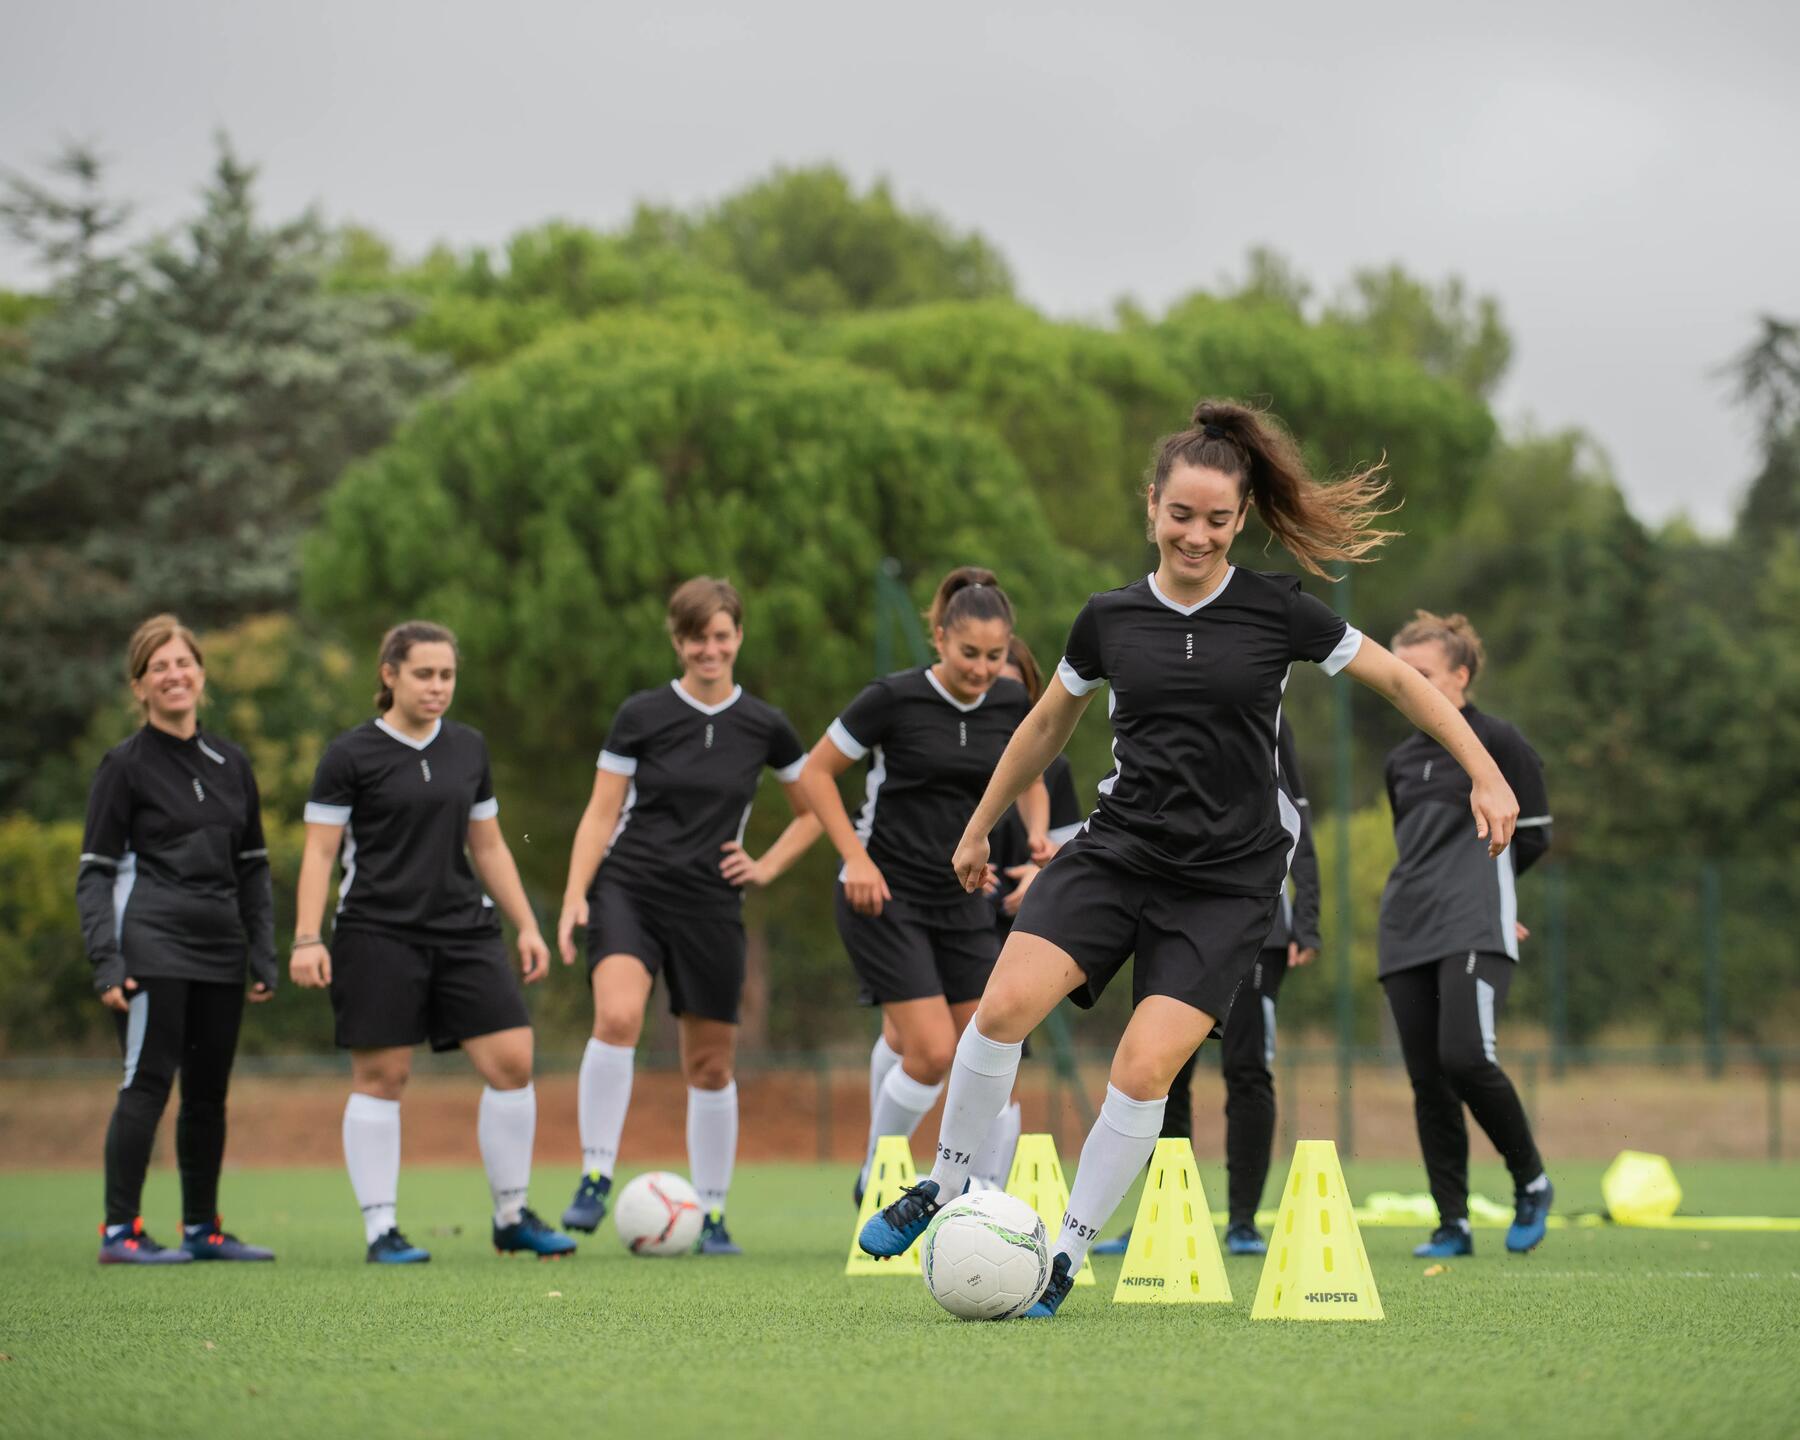 Damesvoetbal: een sport in volle opmars